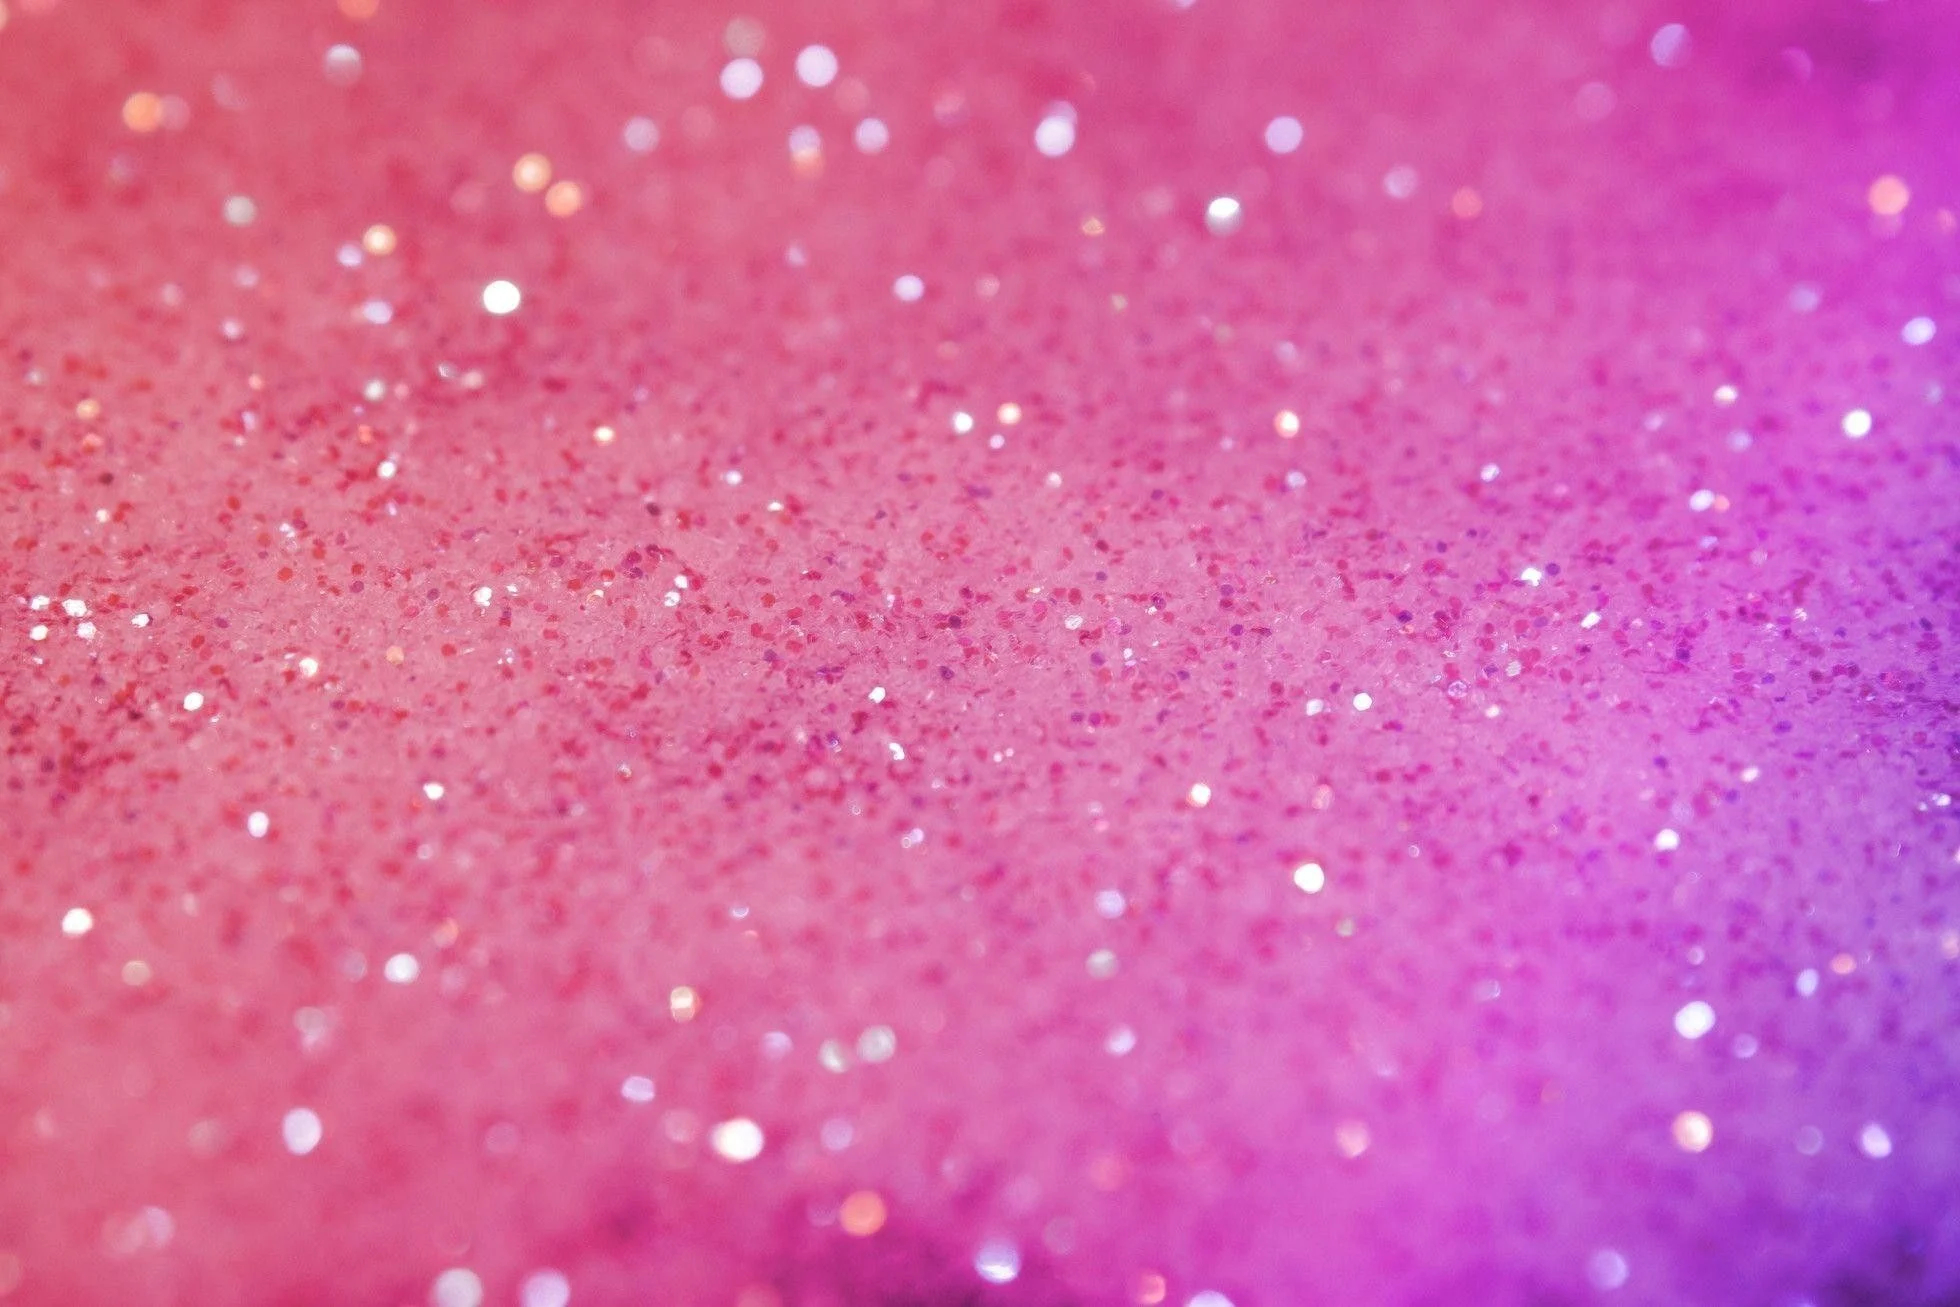 1960x1307 Pink Glitter Desktop Wallpapers Top Free Pink Glitter Desktop Backgrounds